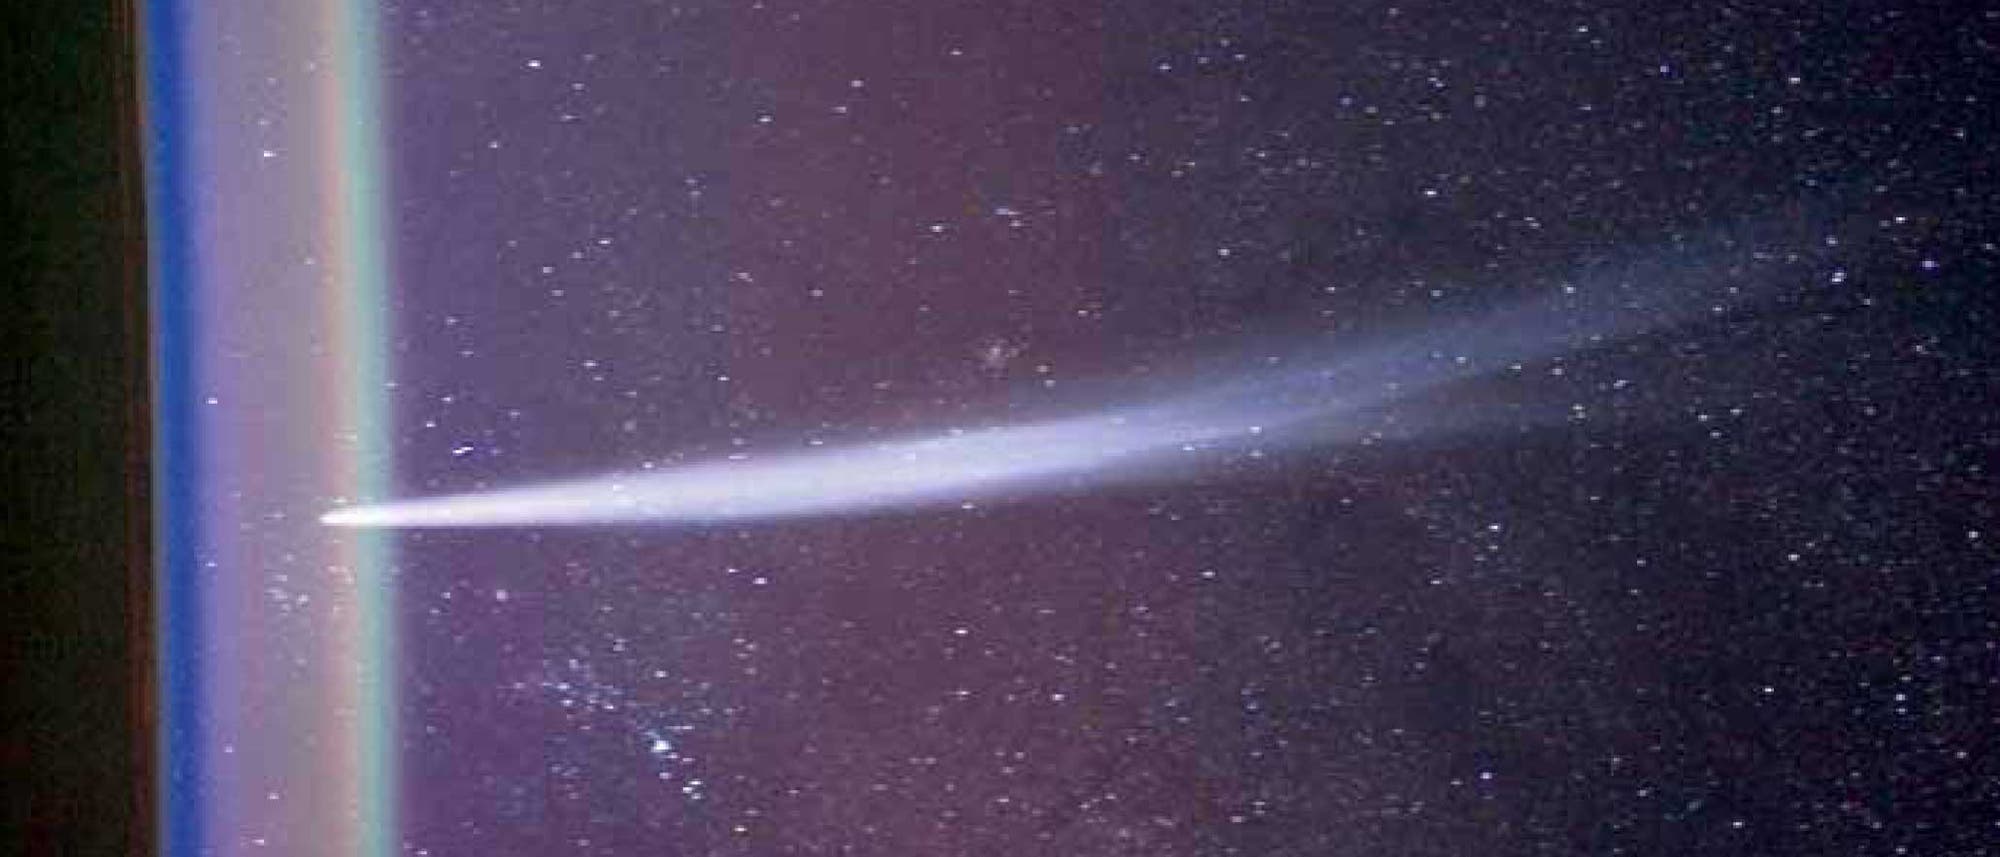 Komet Lovejoy (C/2011 W3)